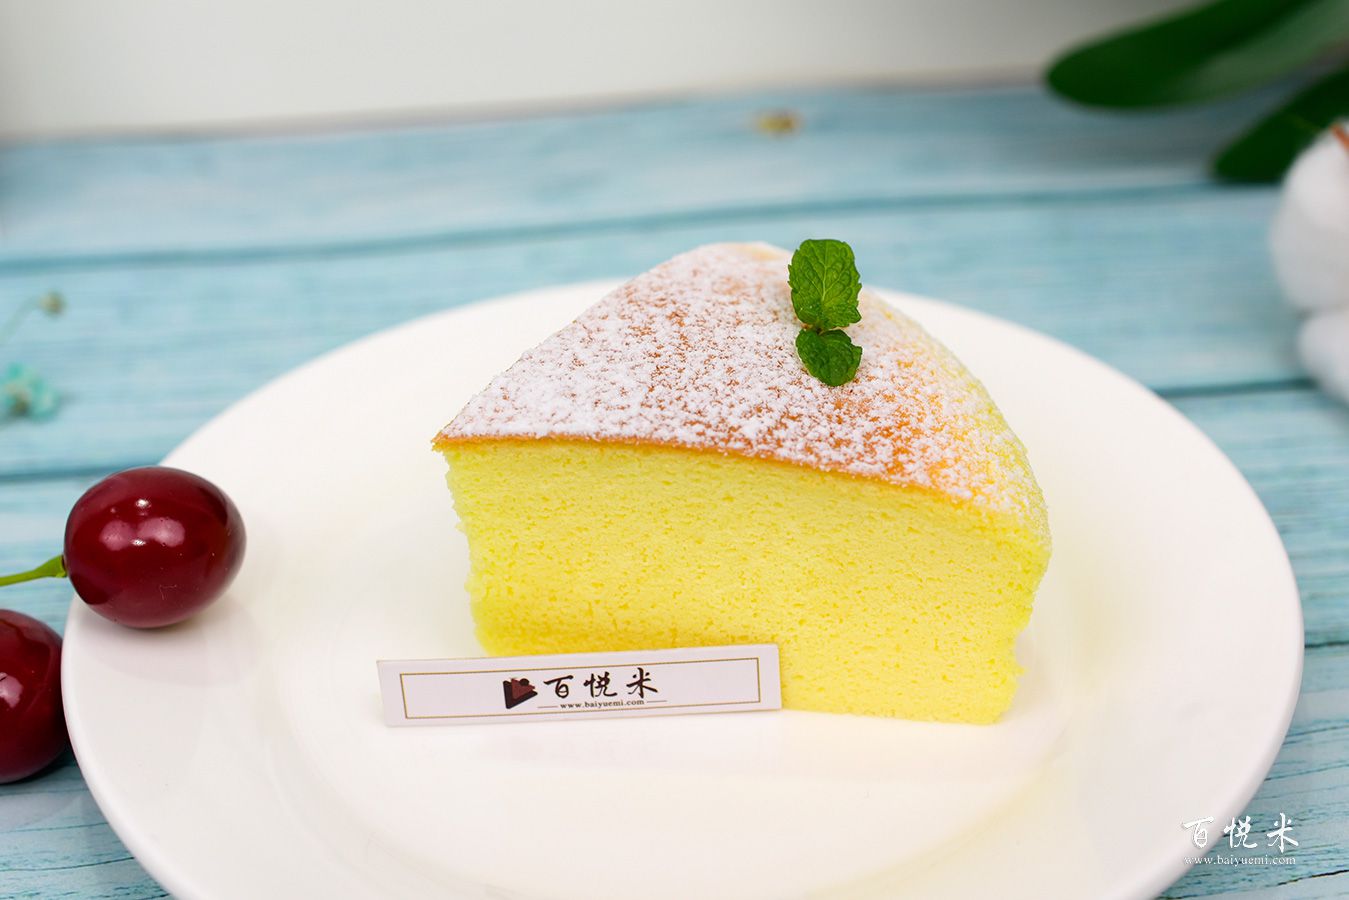 芝士蛋糕高清图片大全【蛋糕图片】_87